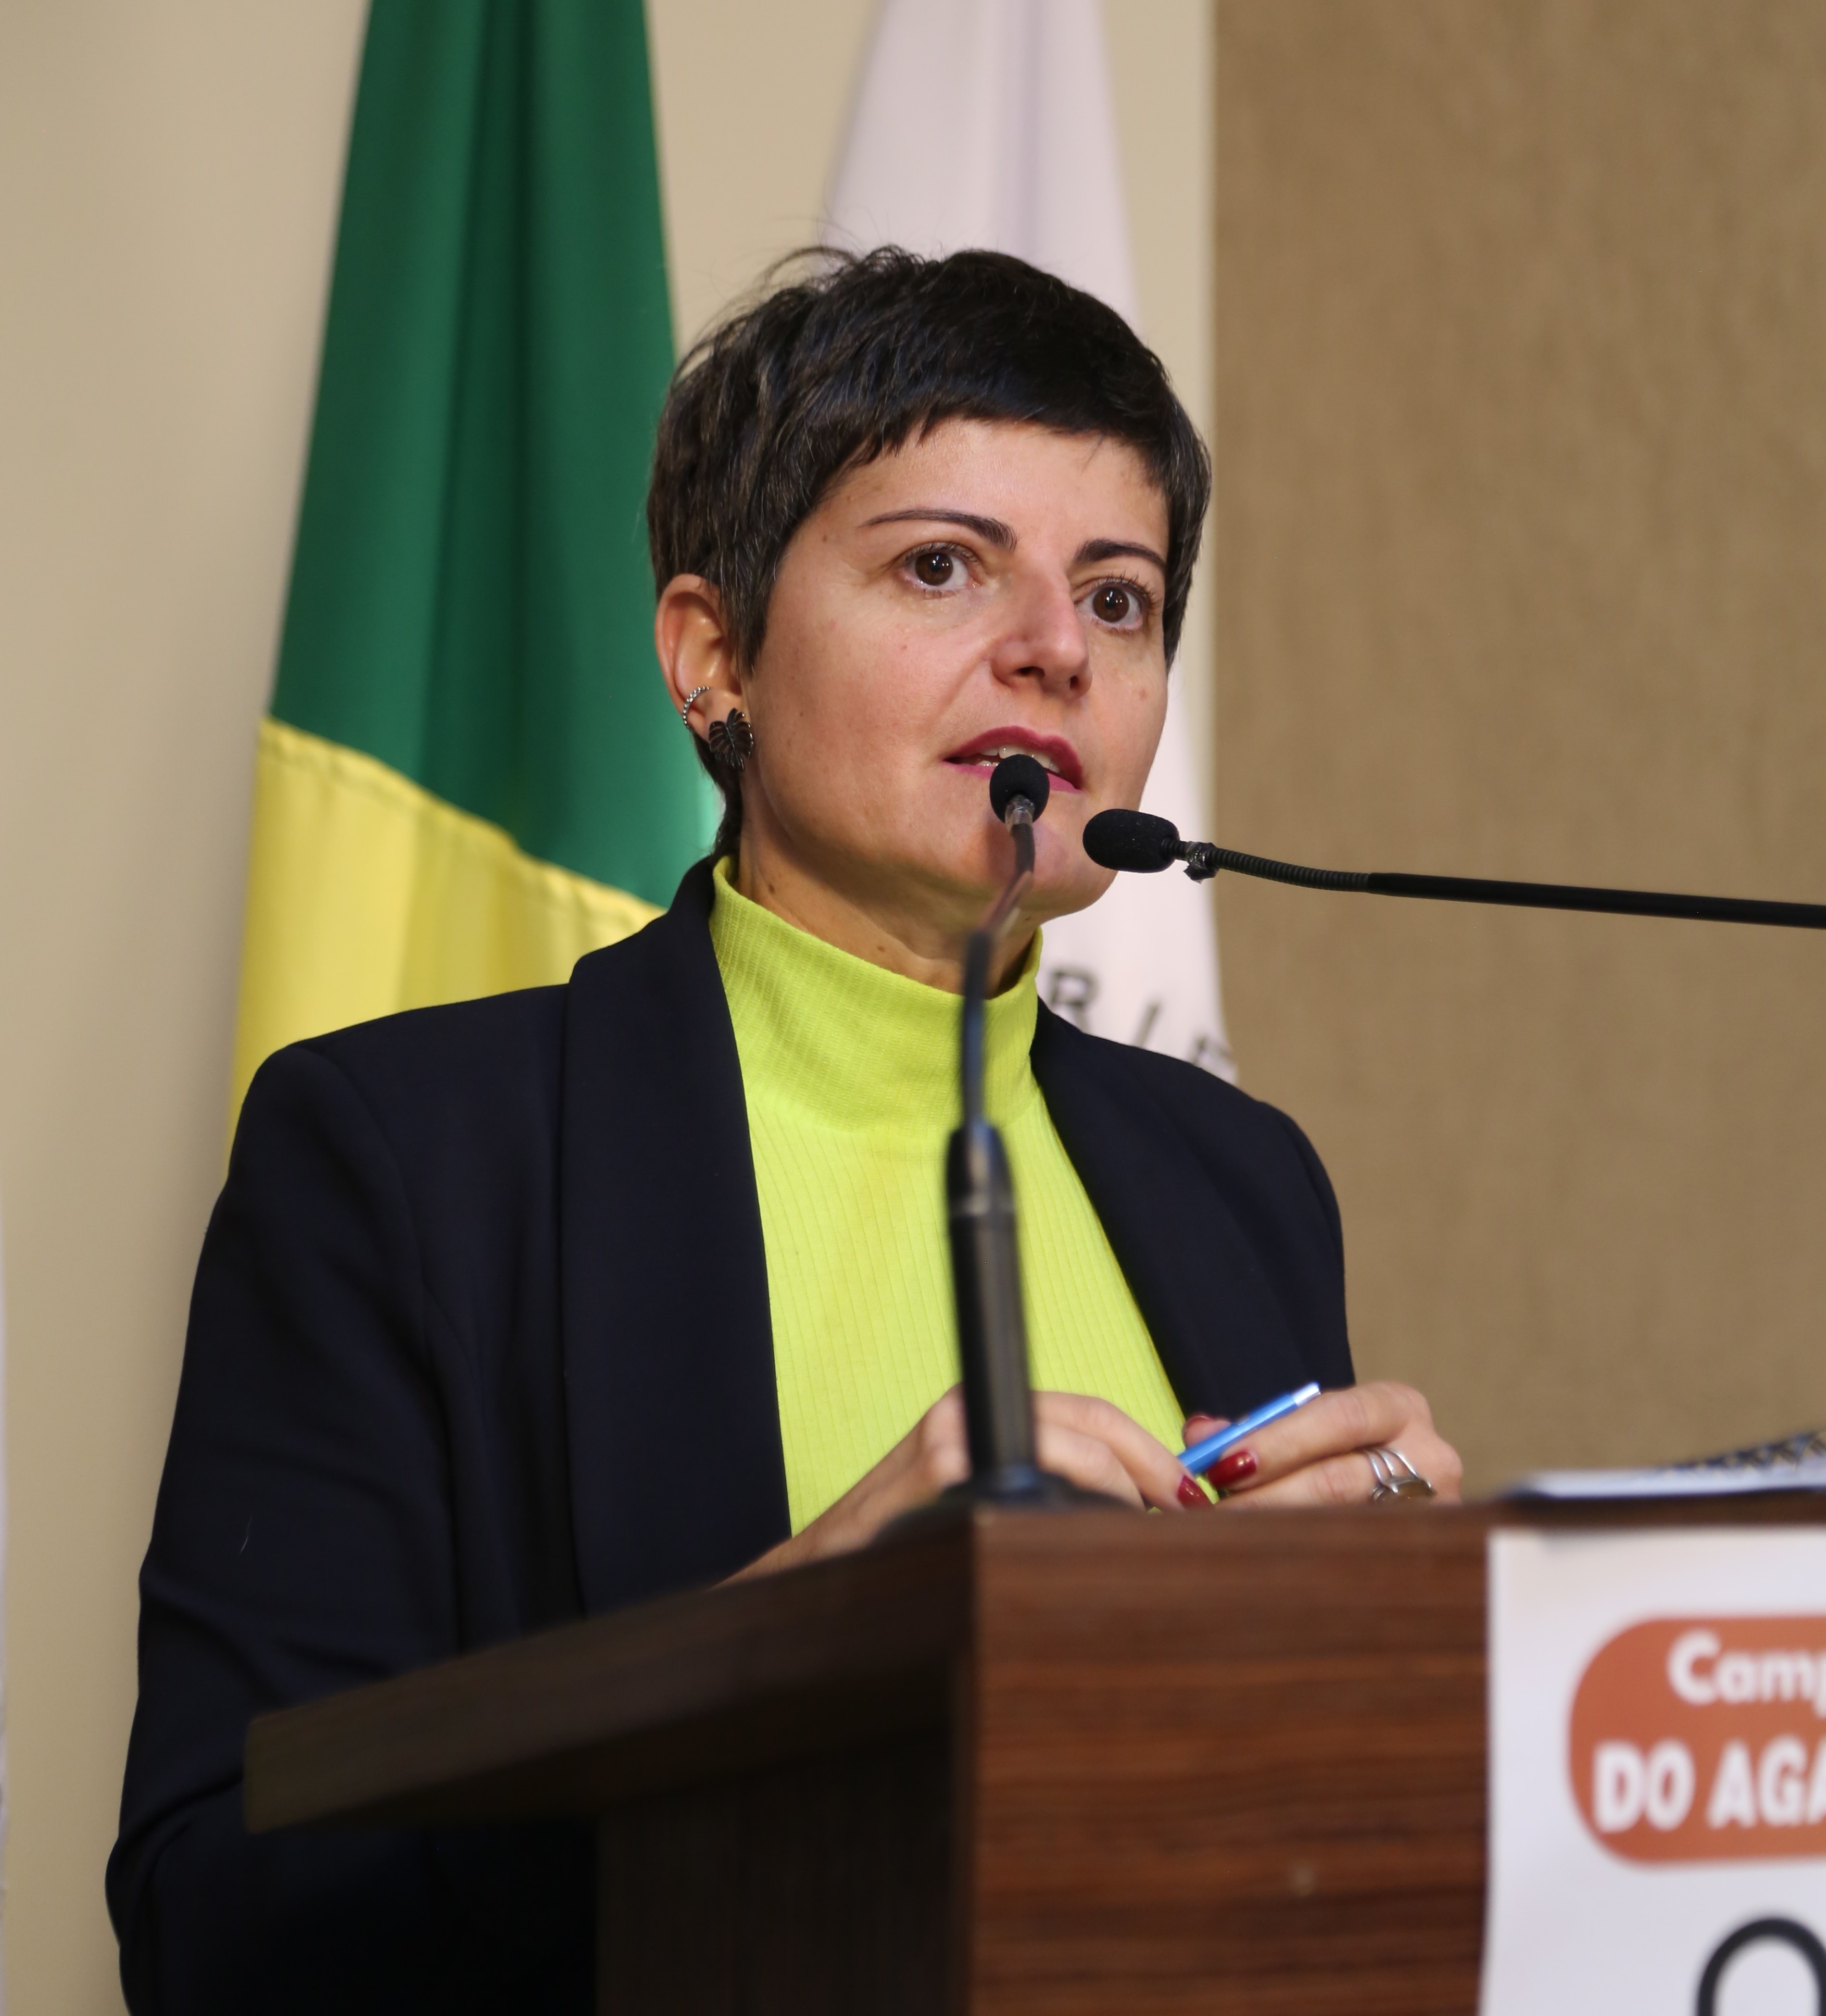 Vereadora Marly Coelho Januário (PSC) 2ª Secretária da Mesa Diretora